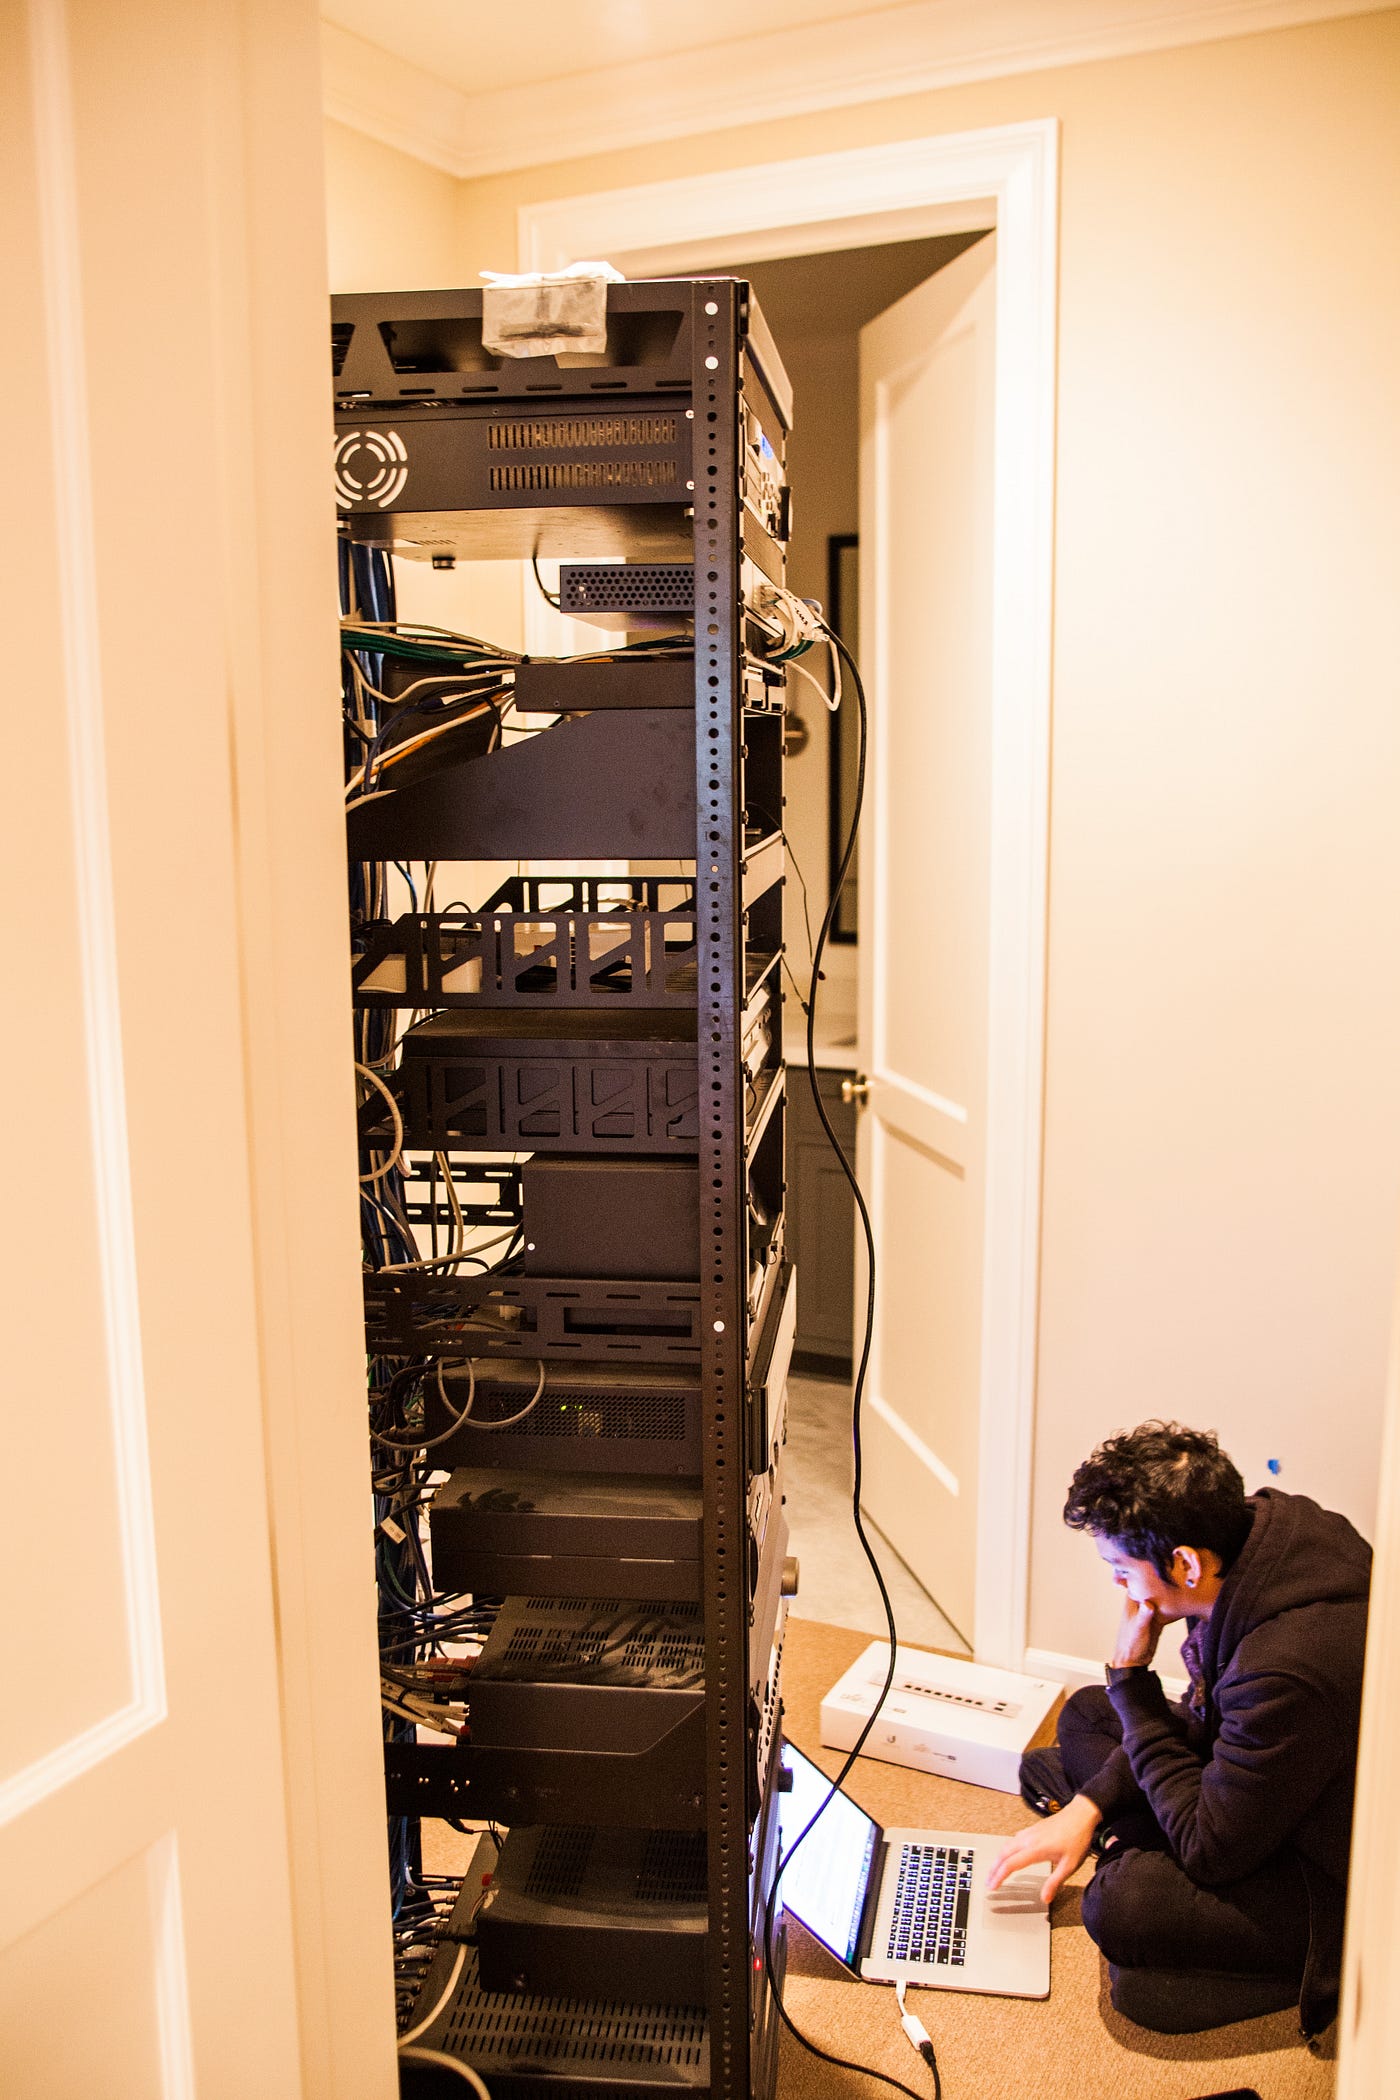 13 DIY Server Rack Plans – How To Build A Server Shelf